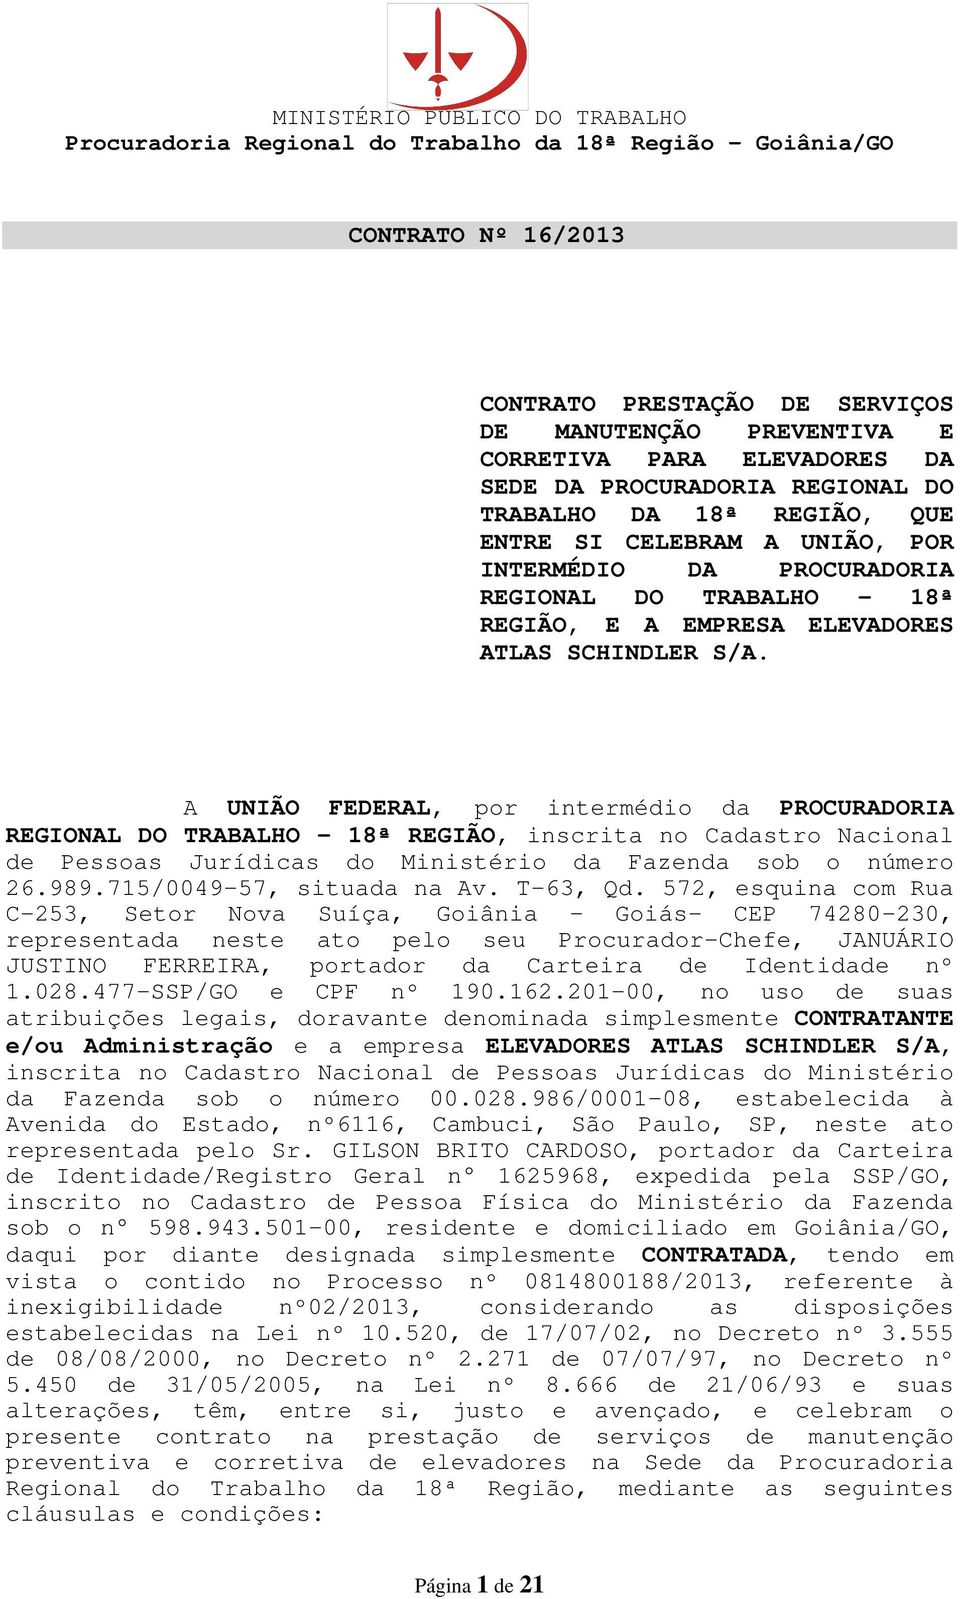 A UNIÃO FEDERAL, por intermédio da PROCURADORIA REGIONAL DO TRABALHO 18ª REGIÃO, inscrita no Cadastro Nacional de Pessoas Jurídicas do Ministério da Fazenda sob o número 26.989.